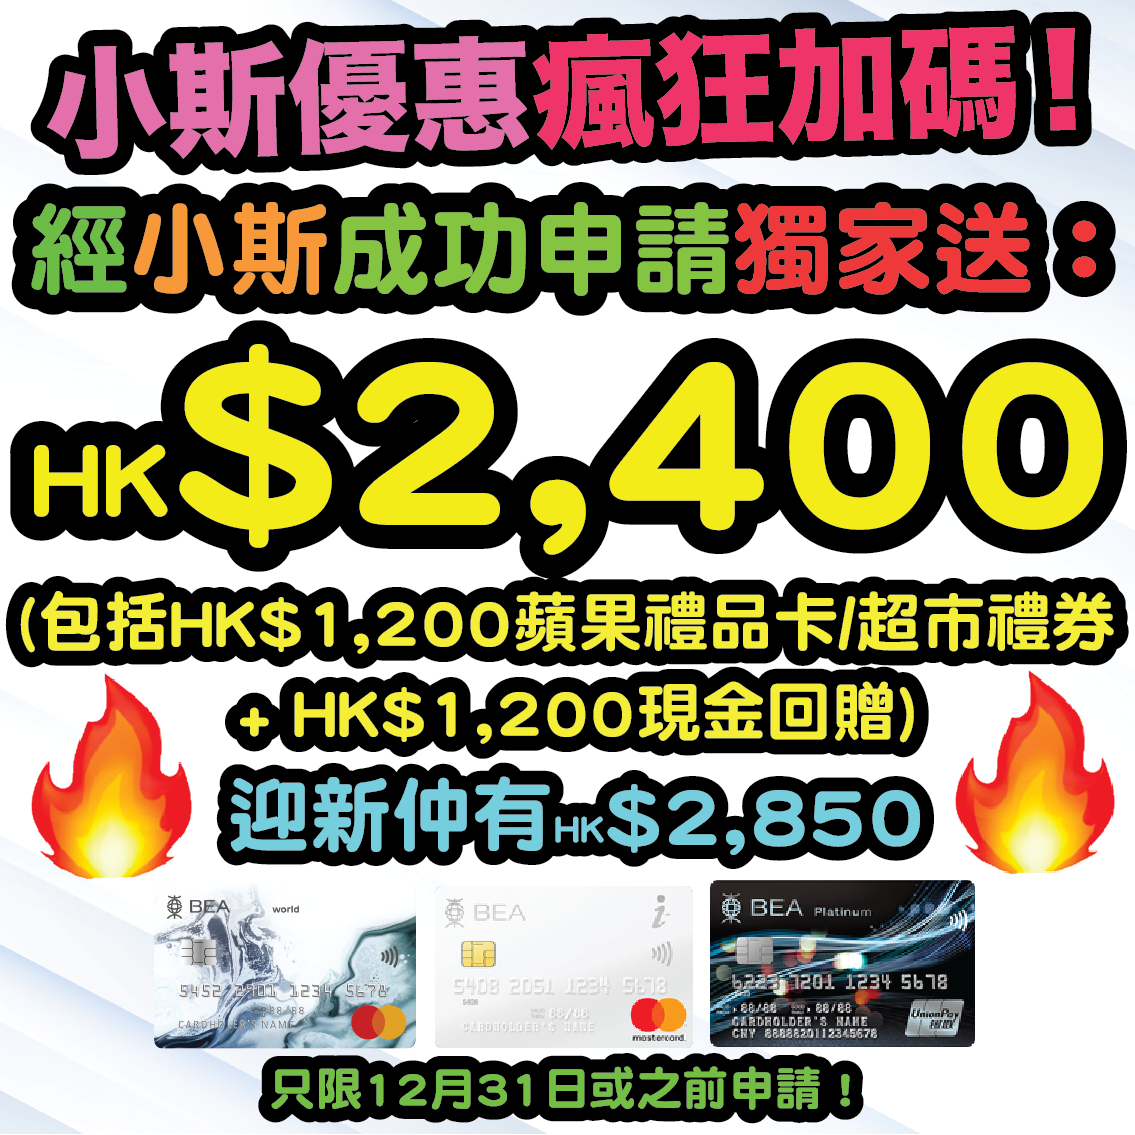 【🔥🔥小斯優惠再加碼😍😍 經小斯申請就有HK$3,000 + 高達HK$2,800迎新】1月31日或之前，新客戶經小斯申請同日申請東亞銀行BEA World Mastercard + BEA i-Titanium卡 及東亞銀行銀聯雙幣白金信用卡，就有小斯獨家HK$1,200 Apple Gift Card 或 超市禮券 + $1,800現金回贈！仲可以同時賺高達HK$2,800迎新！合共HK$5,800獎賞！